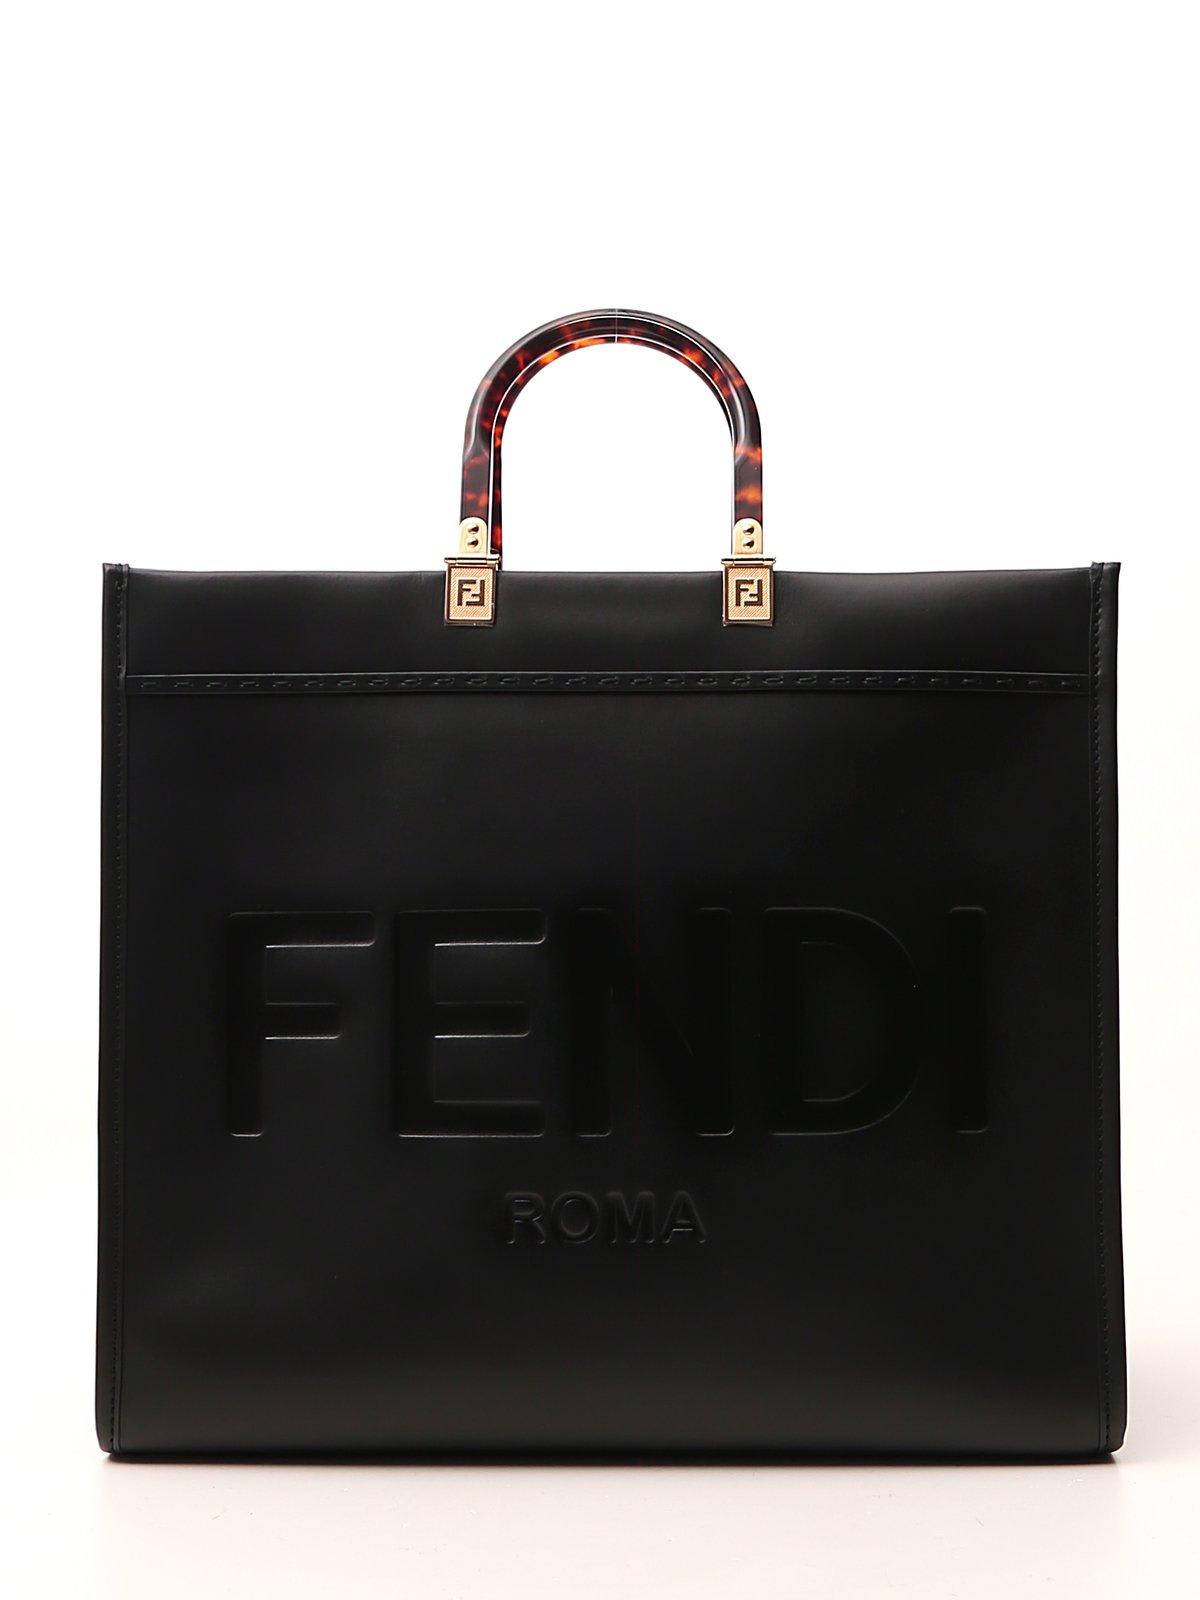 Fendi Sunshine Large Shopper Tote Bag